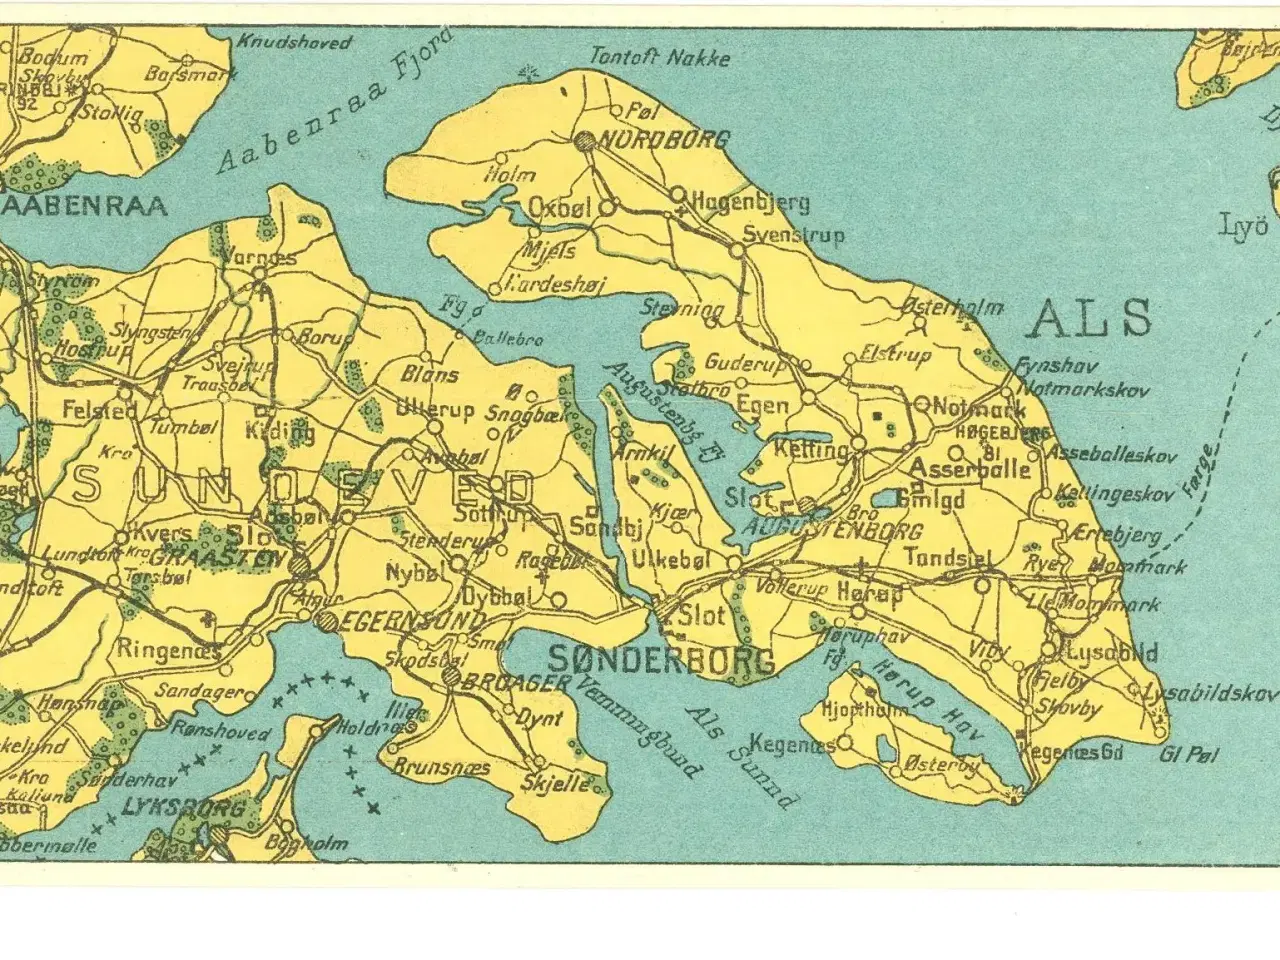 Billede 1 - Kort over Als, Sundeved og Broagerland